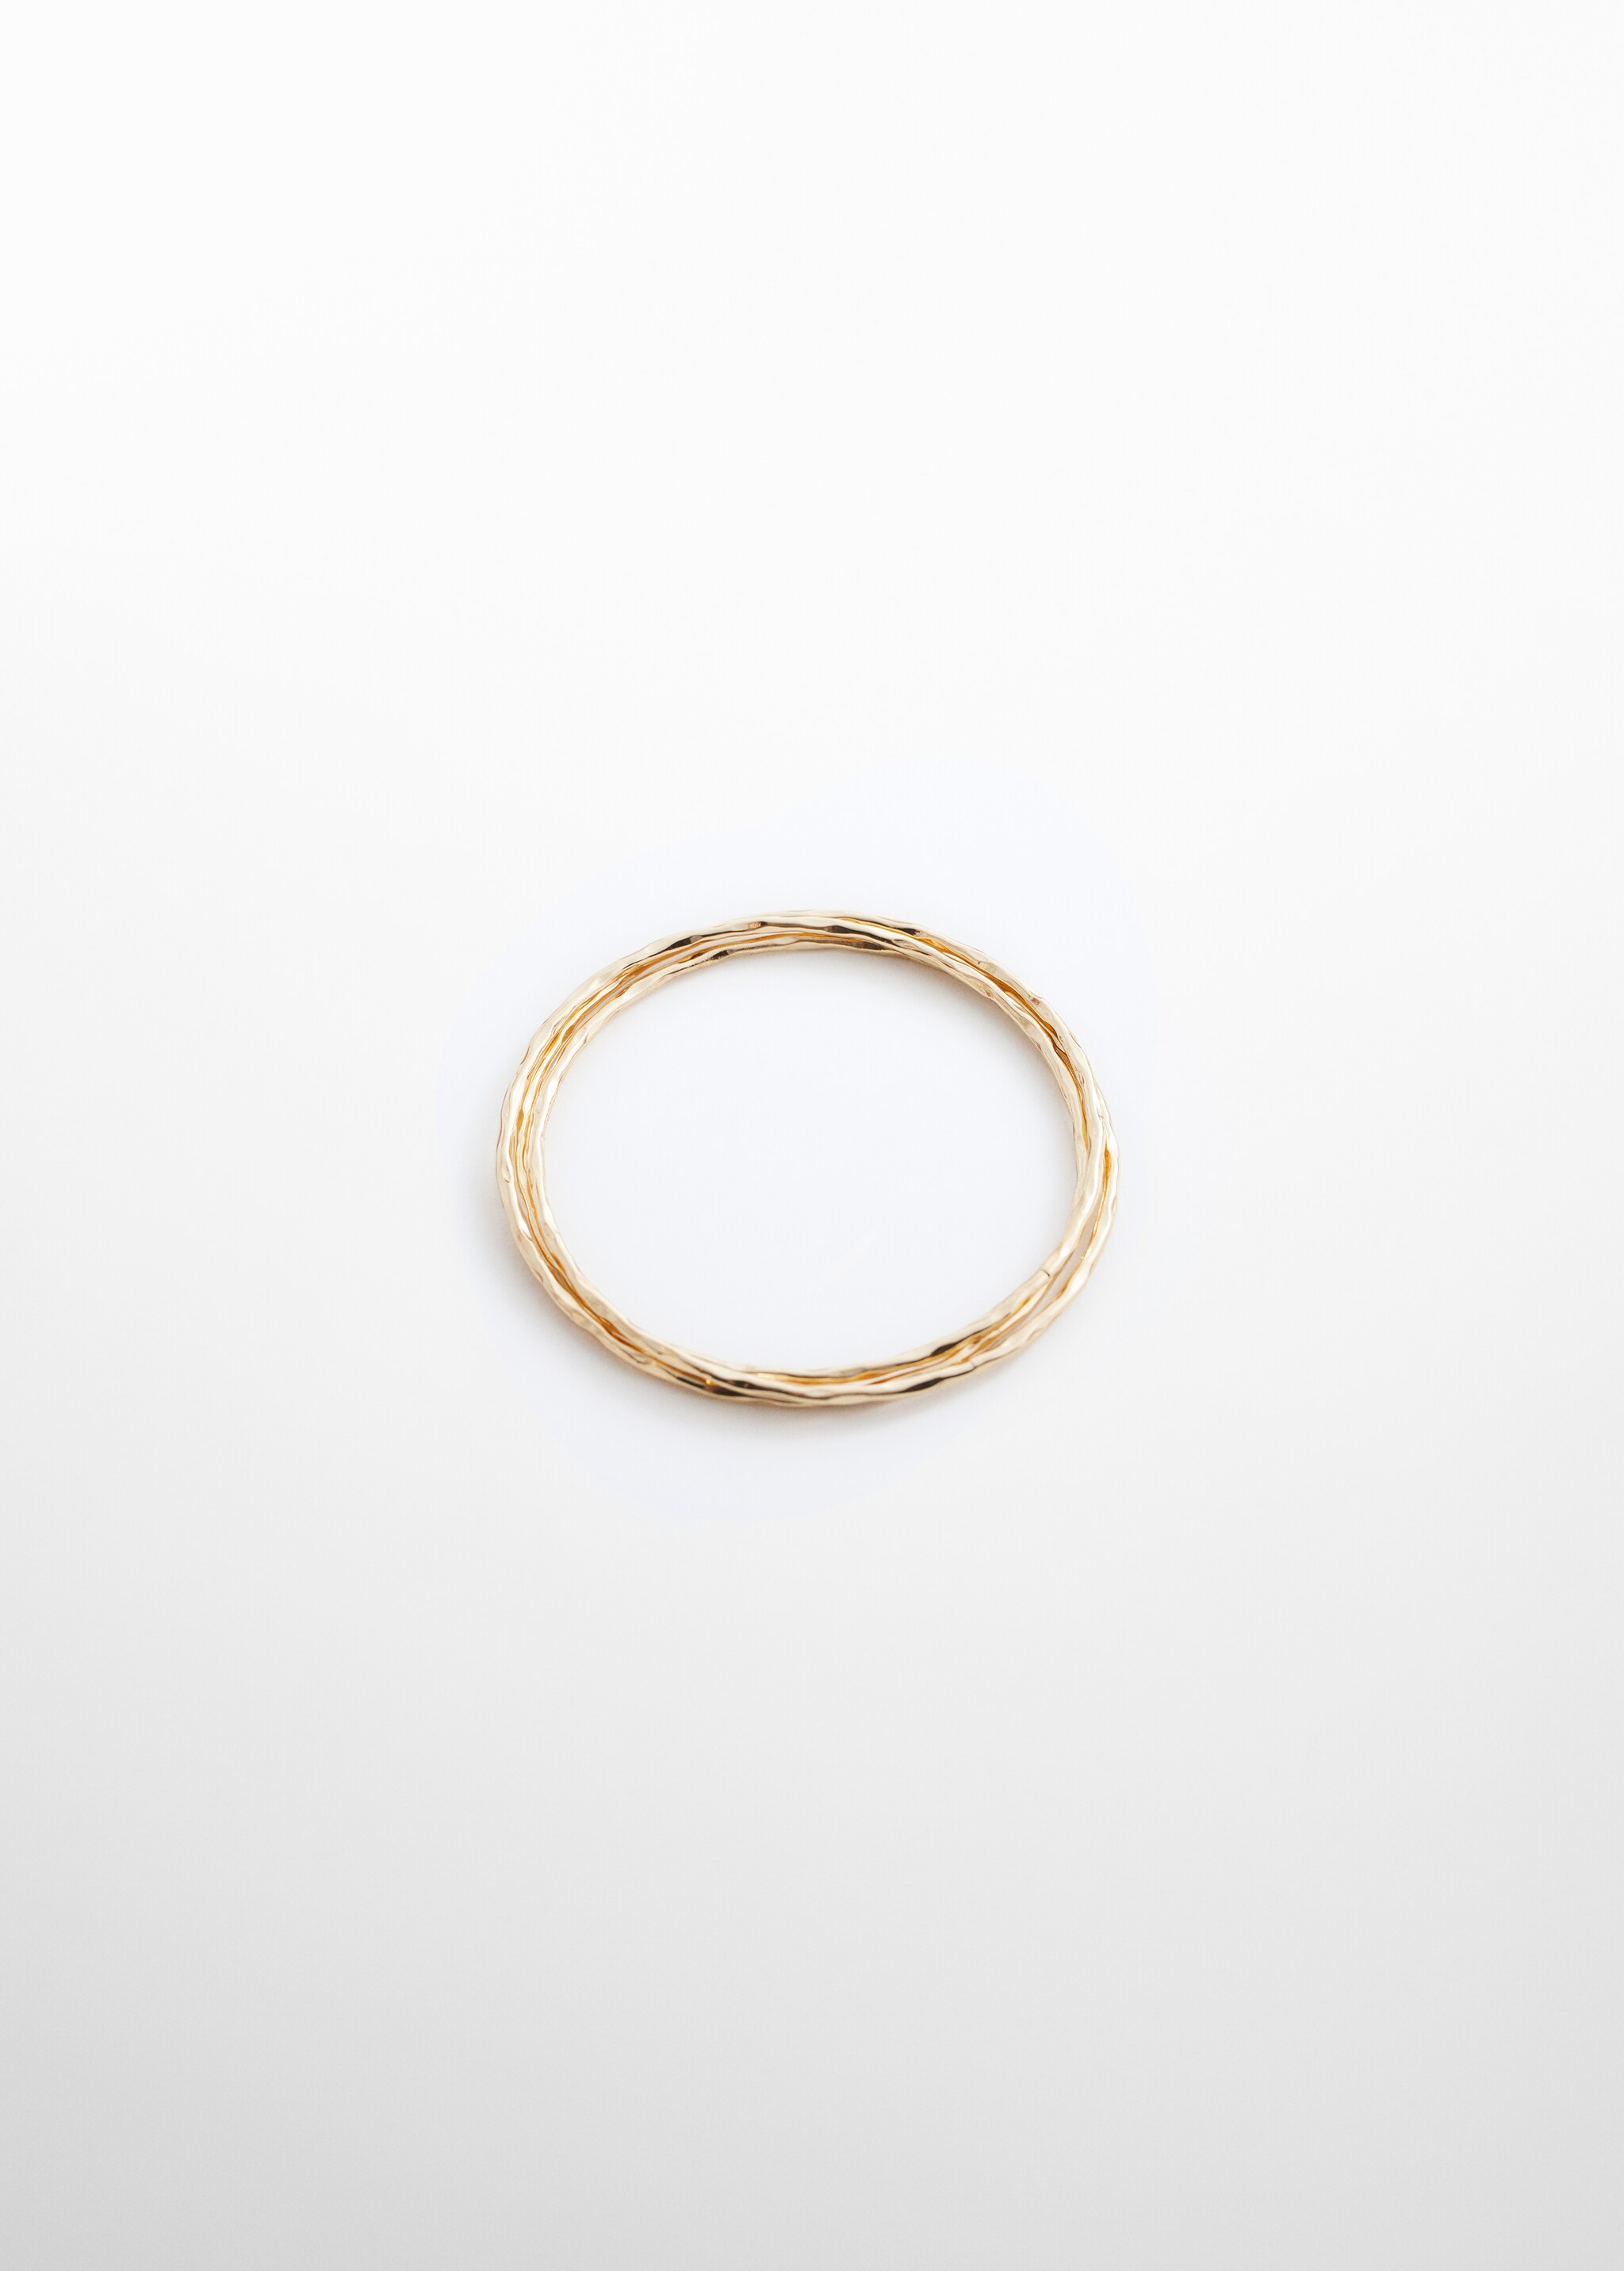 Bracelets anneaux combinées - Article sans modèle